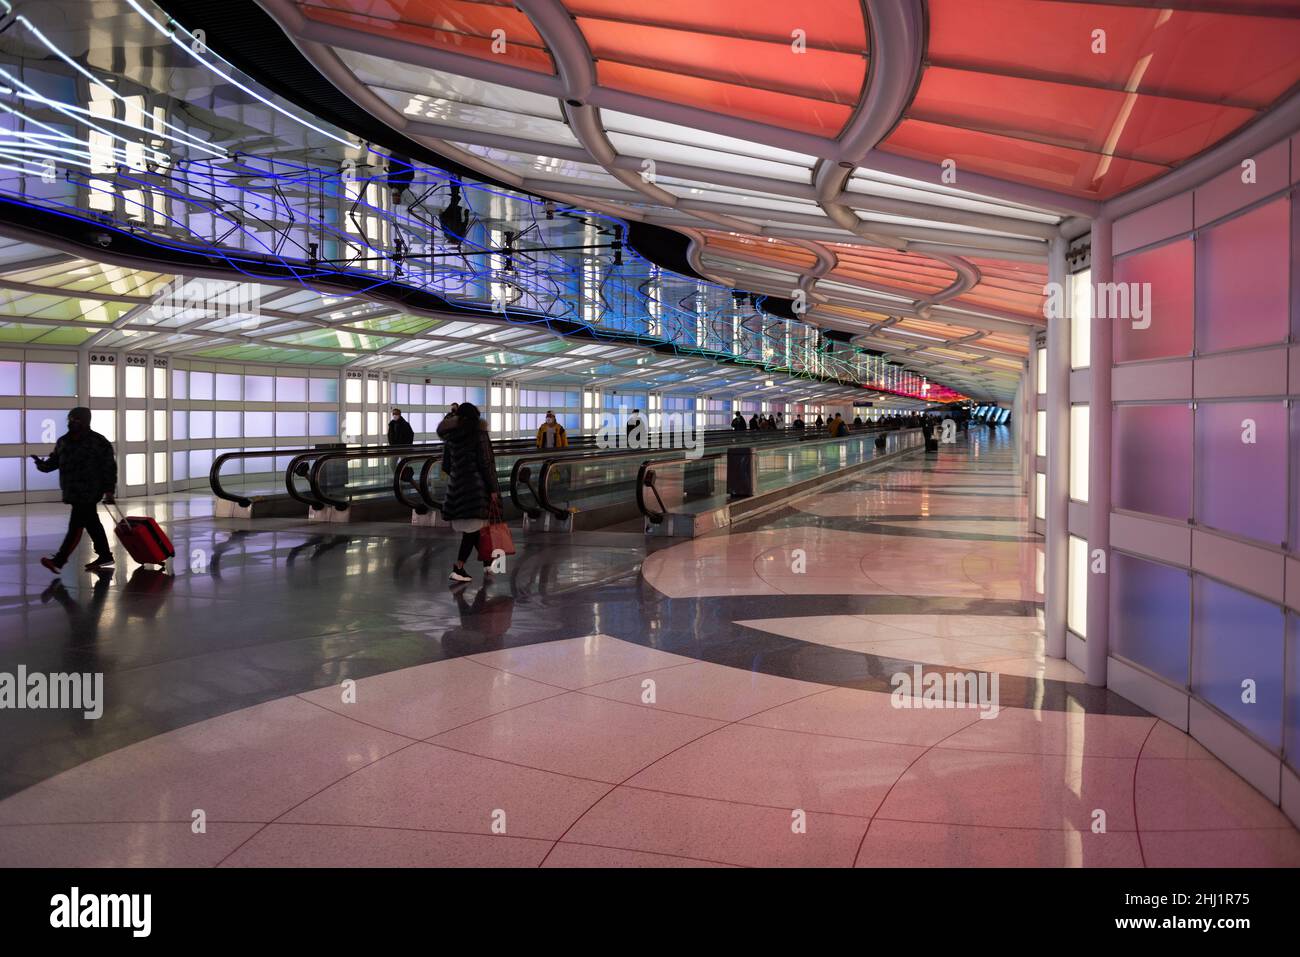 Fluggäste, die Menschen zu Fuß, bunte Neonlichter kunst Installation von Michael Hayden, Fußgängertunnel, Chicago O'Hare Airport Terminal. Stockfoto